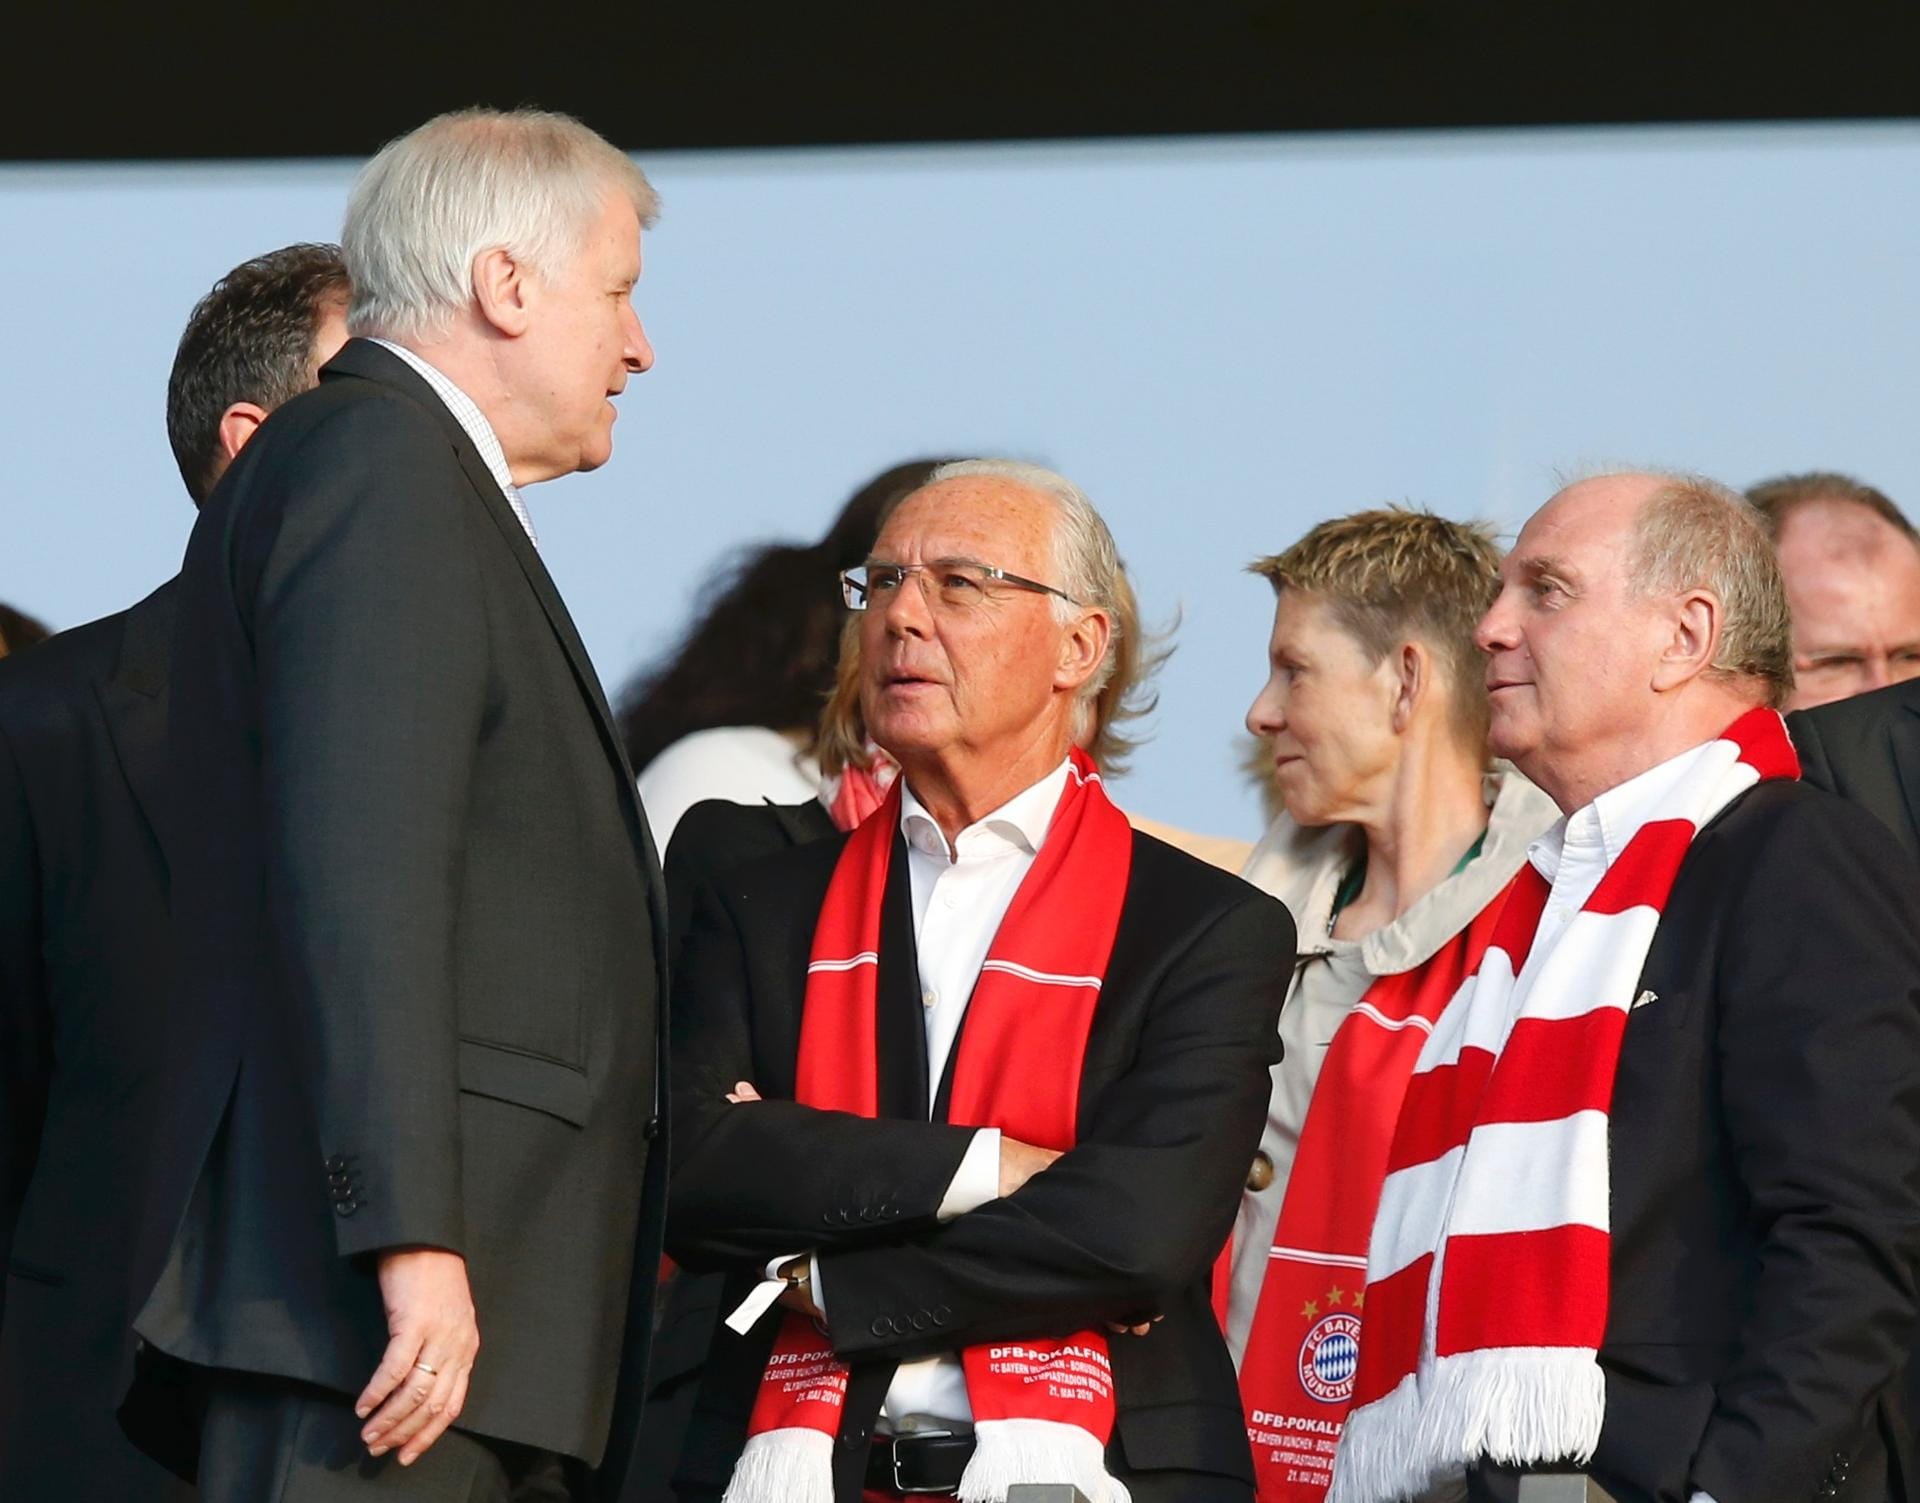 Prominenz ist natürlich auch reichlich im Stadion: Neben Außenminister Frank-Walter Steinmeier besuchen auch Bayerns Ministerpräsident Horst Seehofer, Franz Beckenbauer und Uli Hoeneß (von links) das Endspiel.